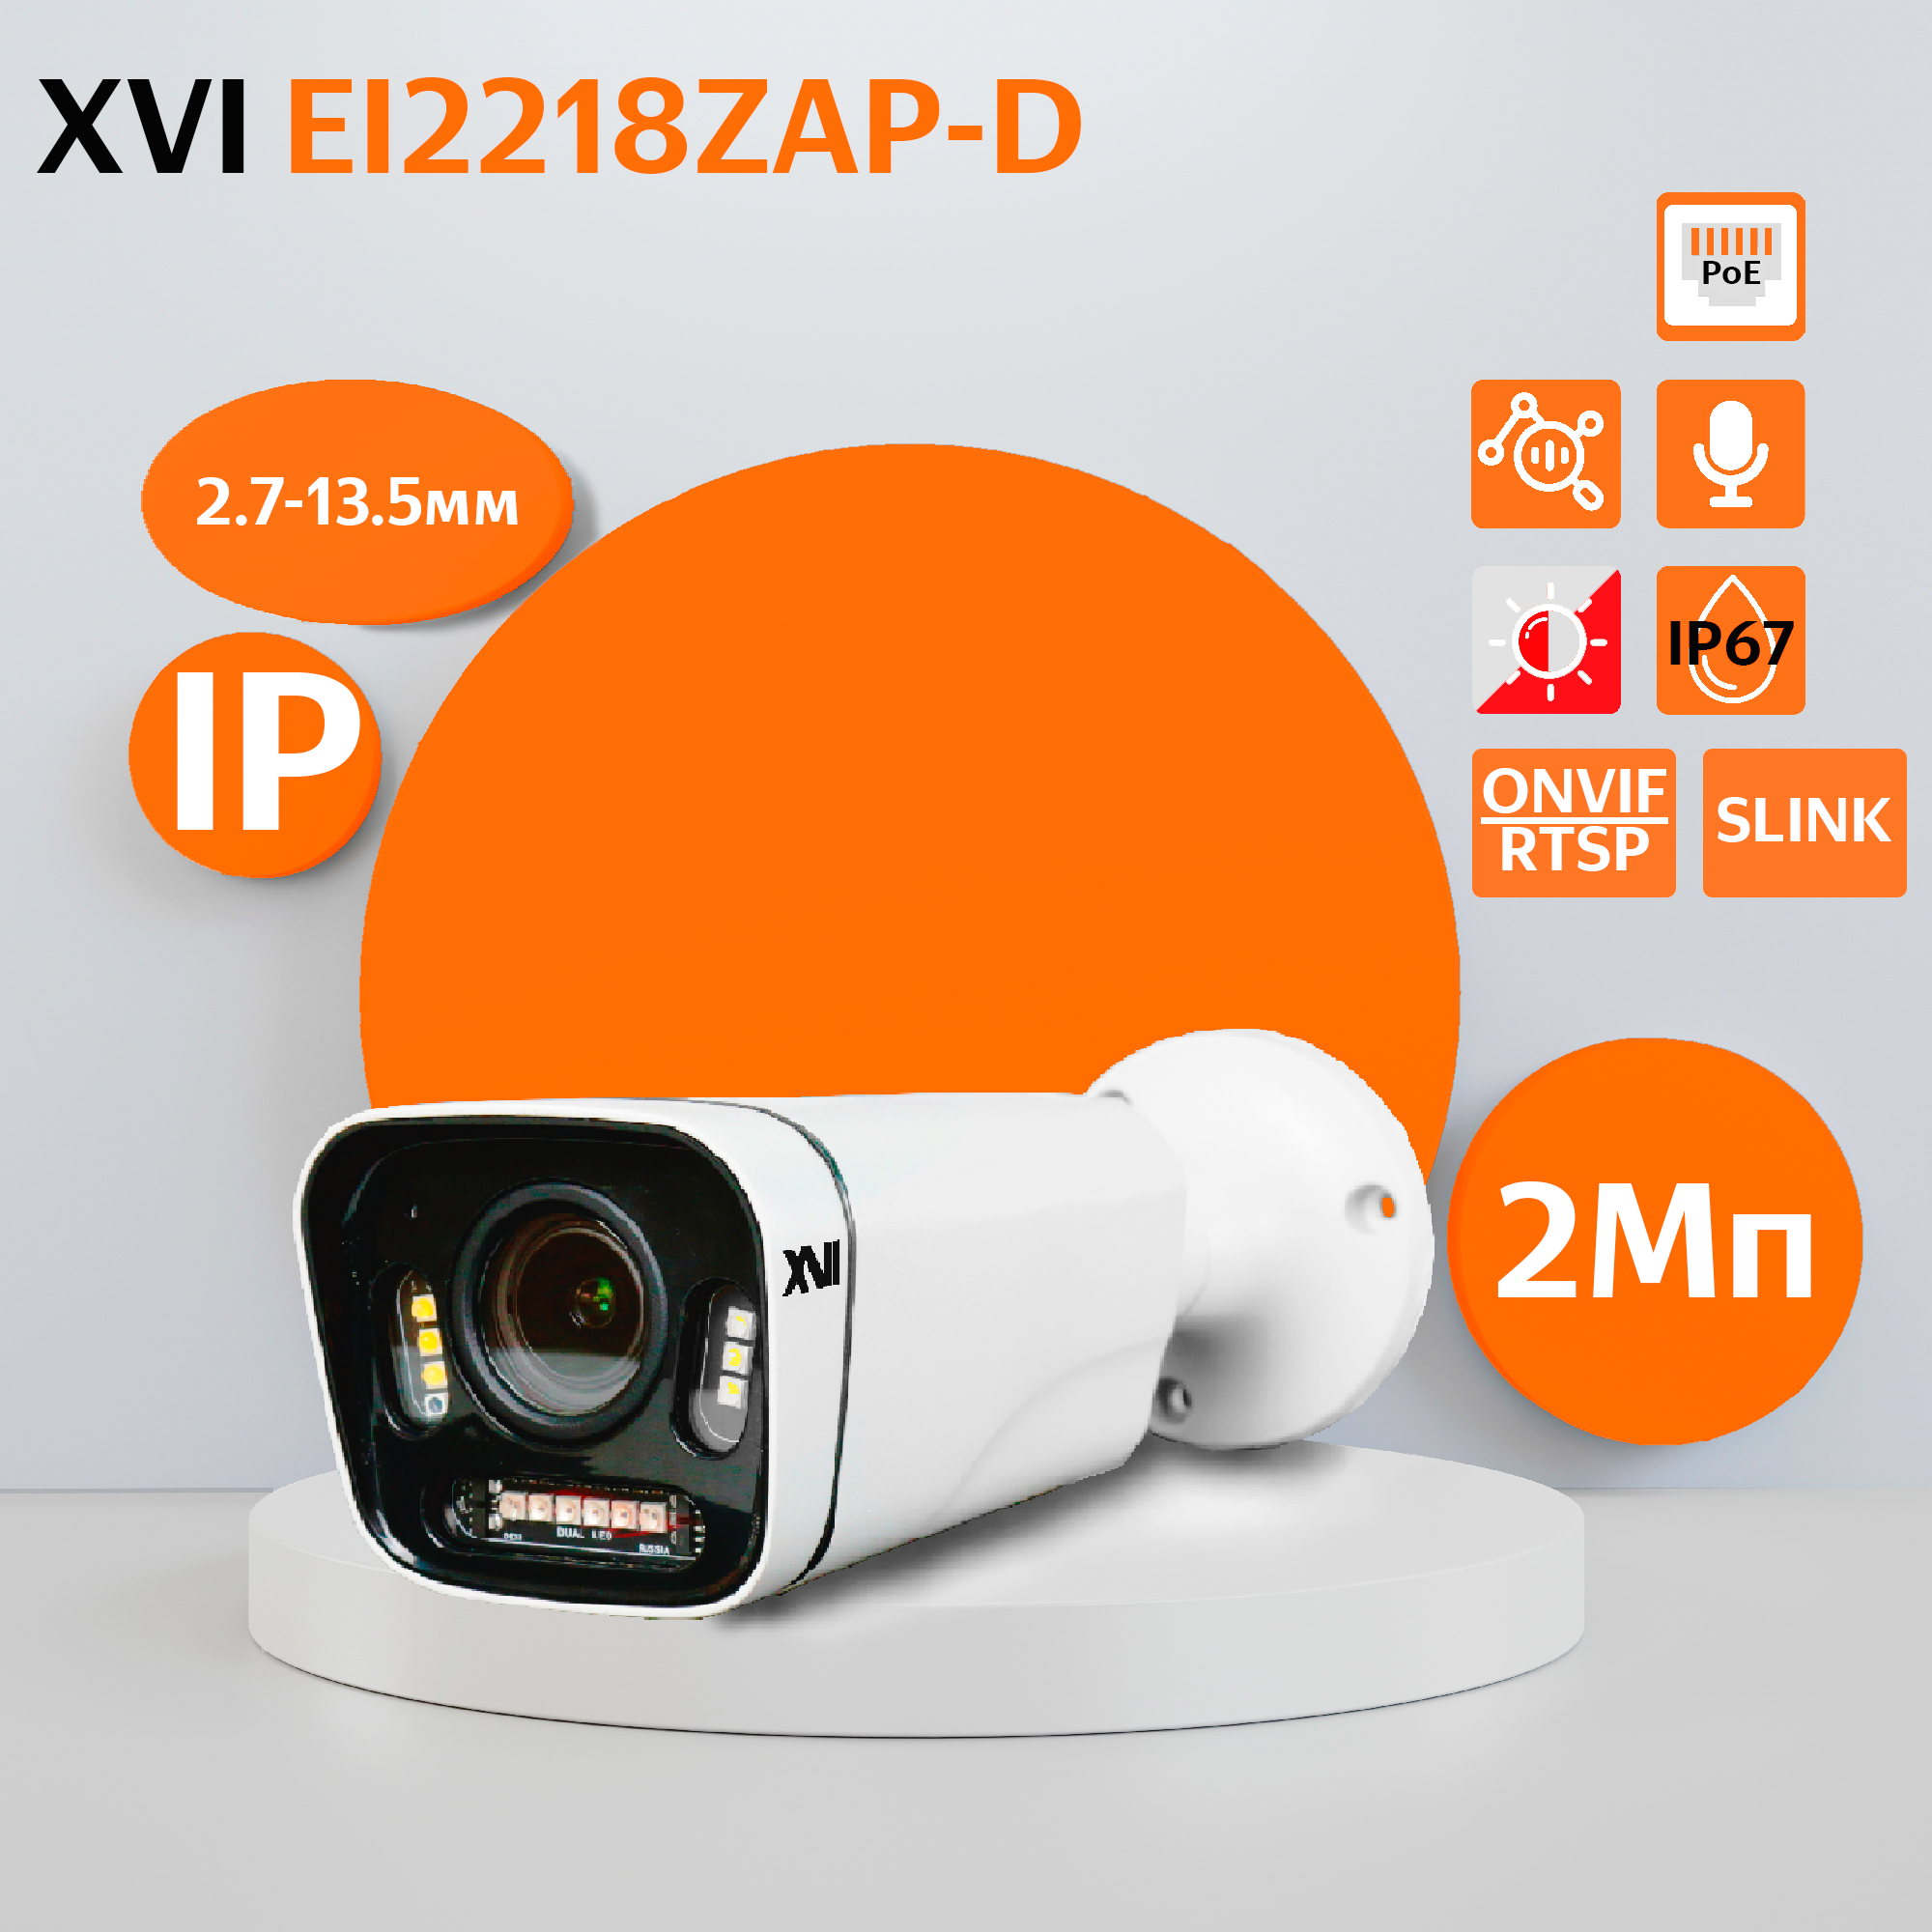 Уличная IP камера XVI EI2218ZAP-D, 2Мп, вариоф.объектив, PoE, ИК+белая, f=2.7-13.5мм уличная ip камера xvi ei2217cap d 2мп фикс объектив встр мкрф poe dual led f 3 6мм